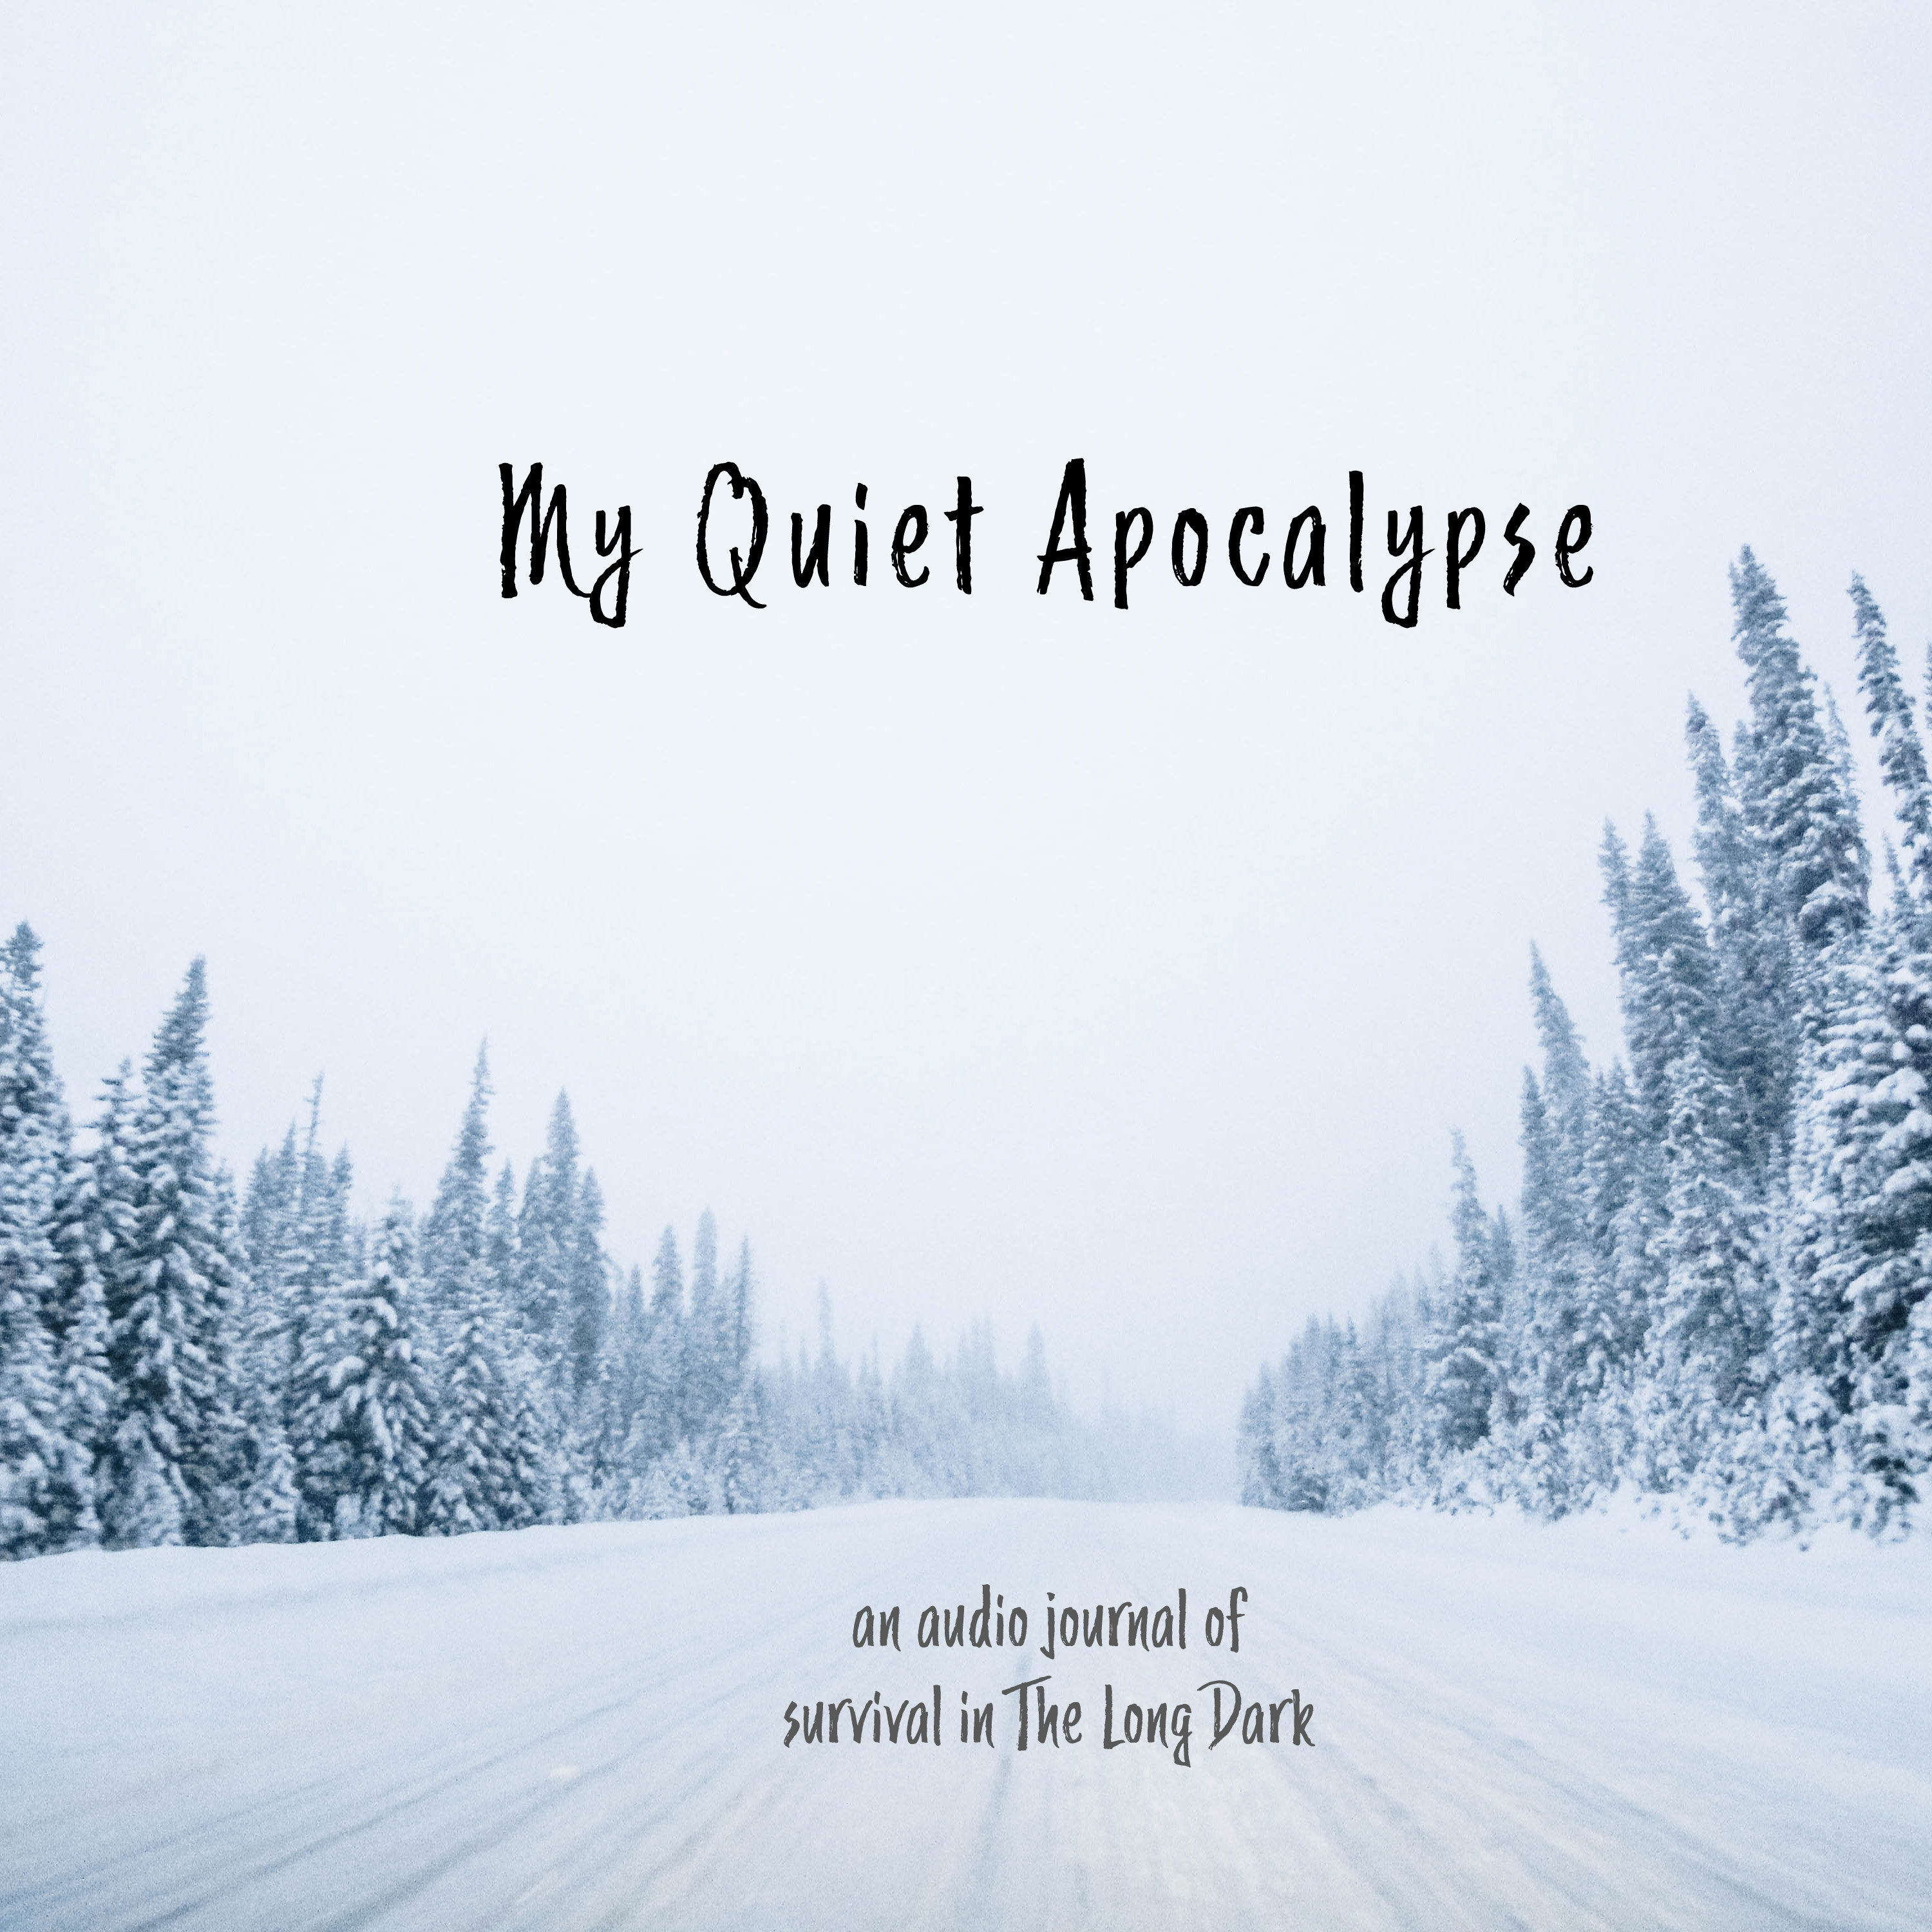 My Quiet Apocalypse